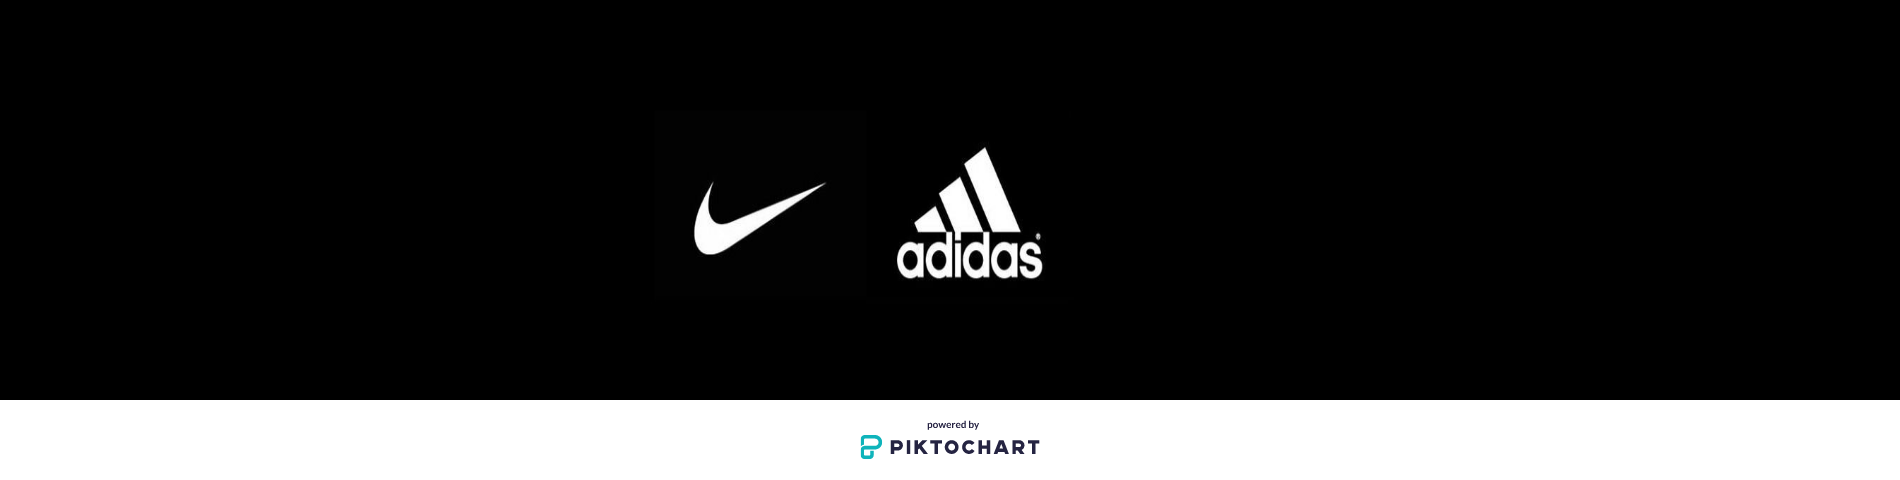 Adidas vs Nike | Kaggle